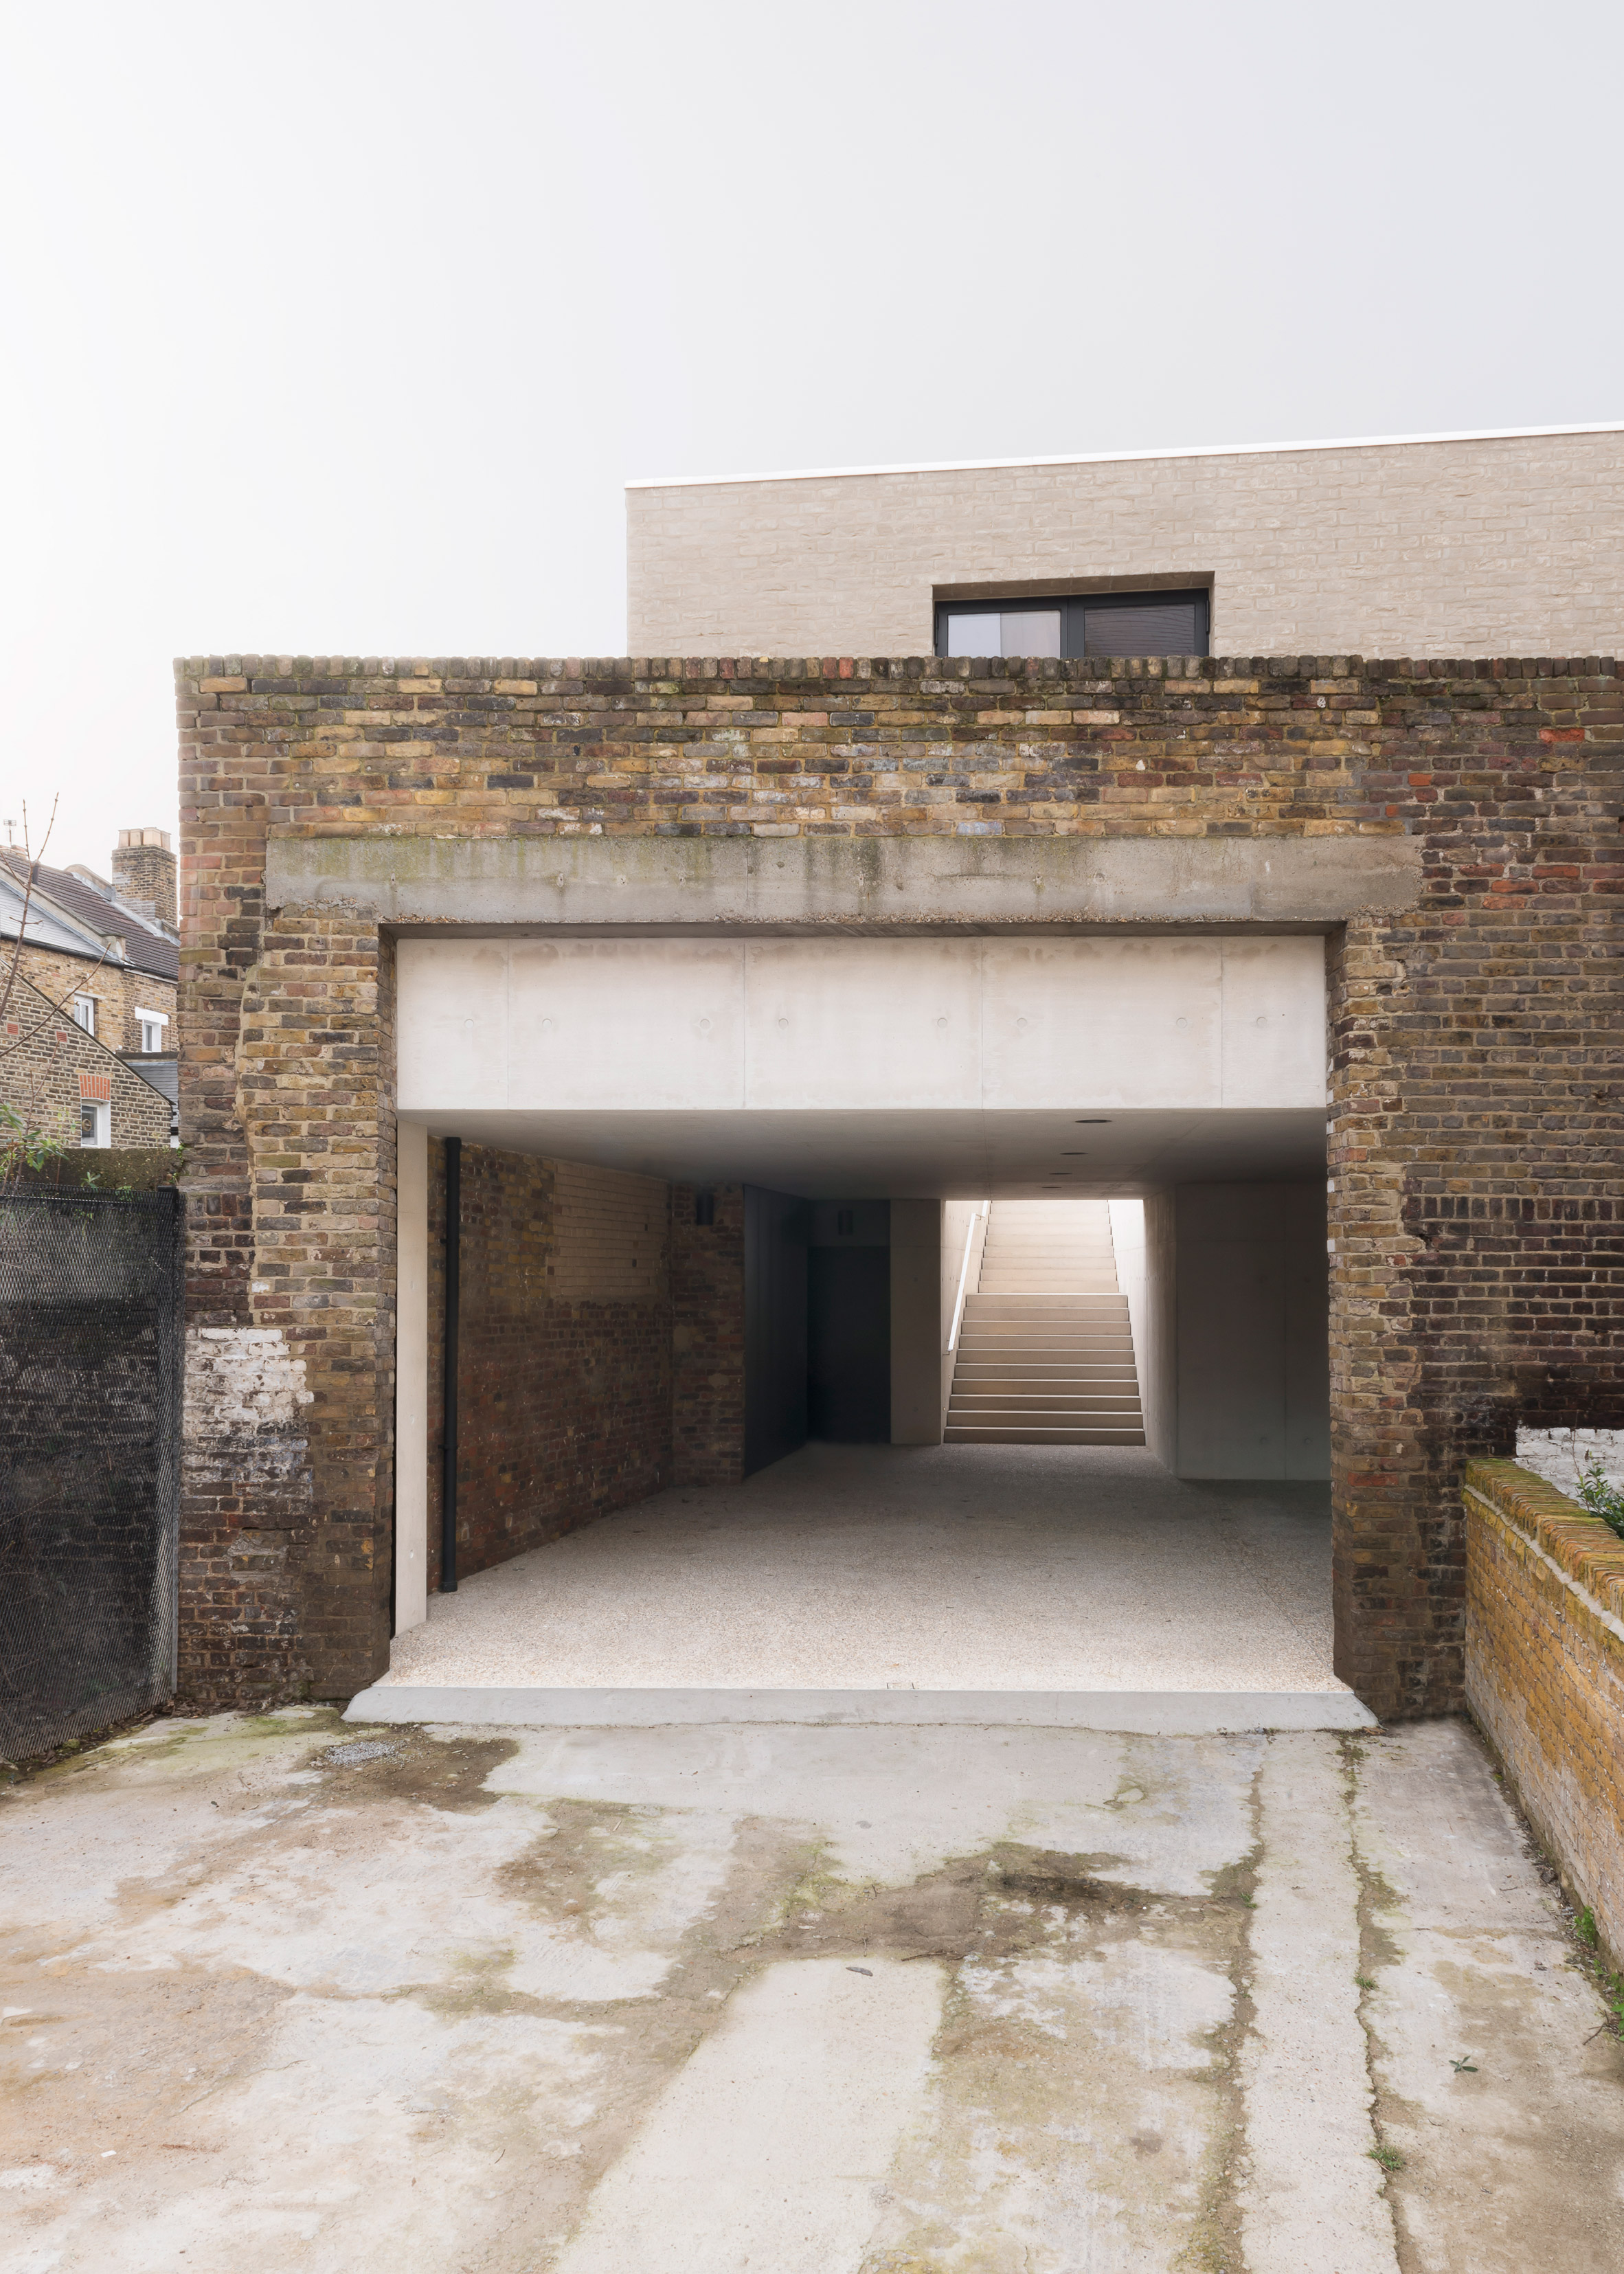 Carmody Groarke inserts concrete house inside old brick warehouse in London